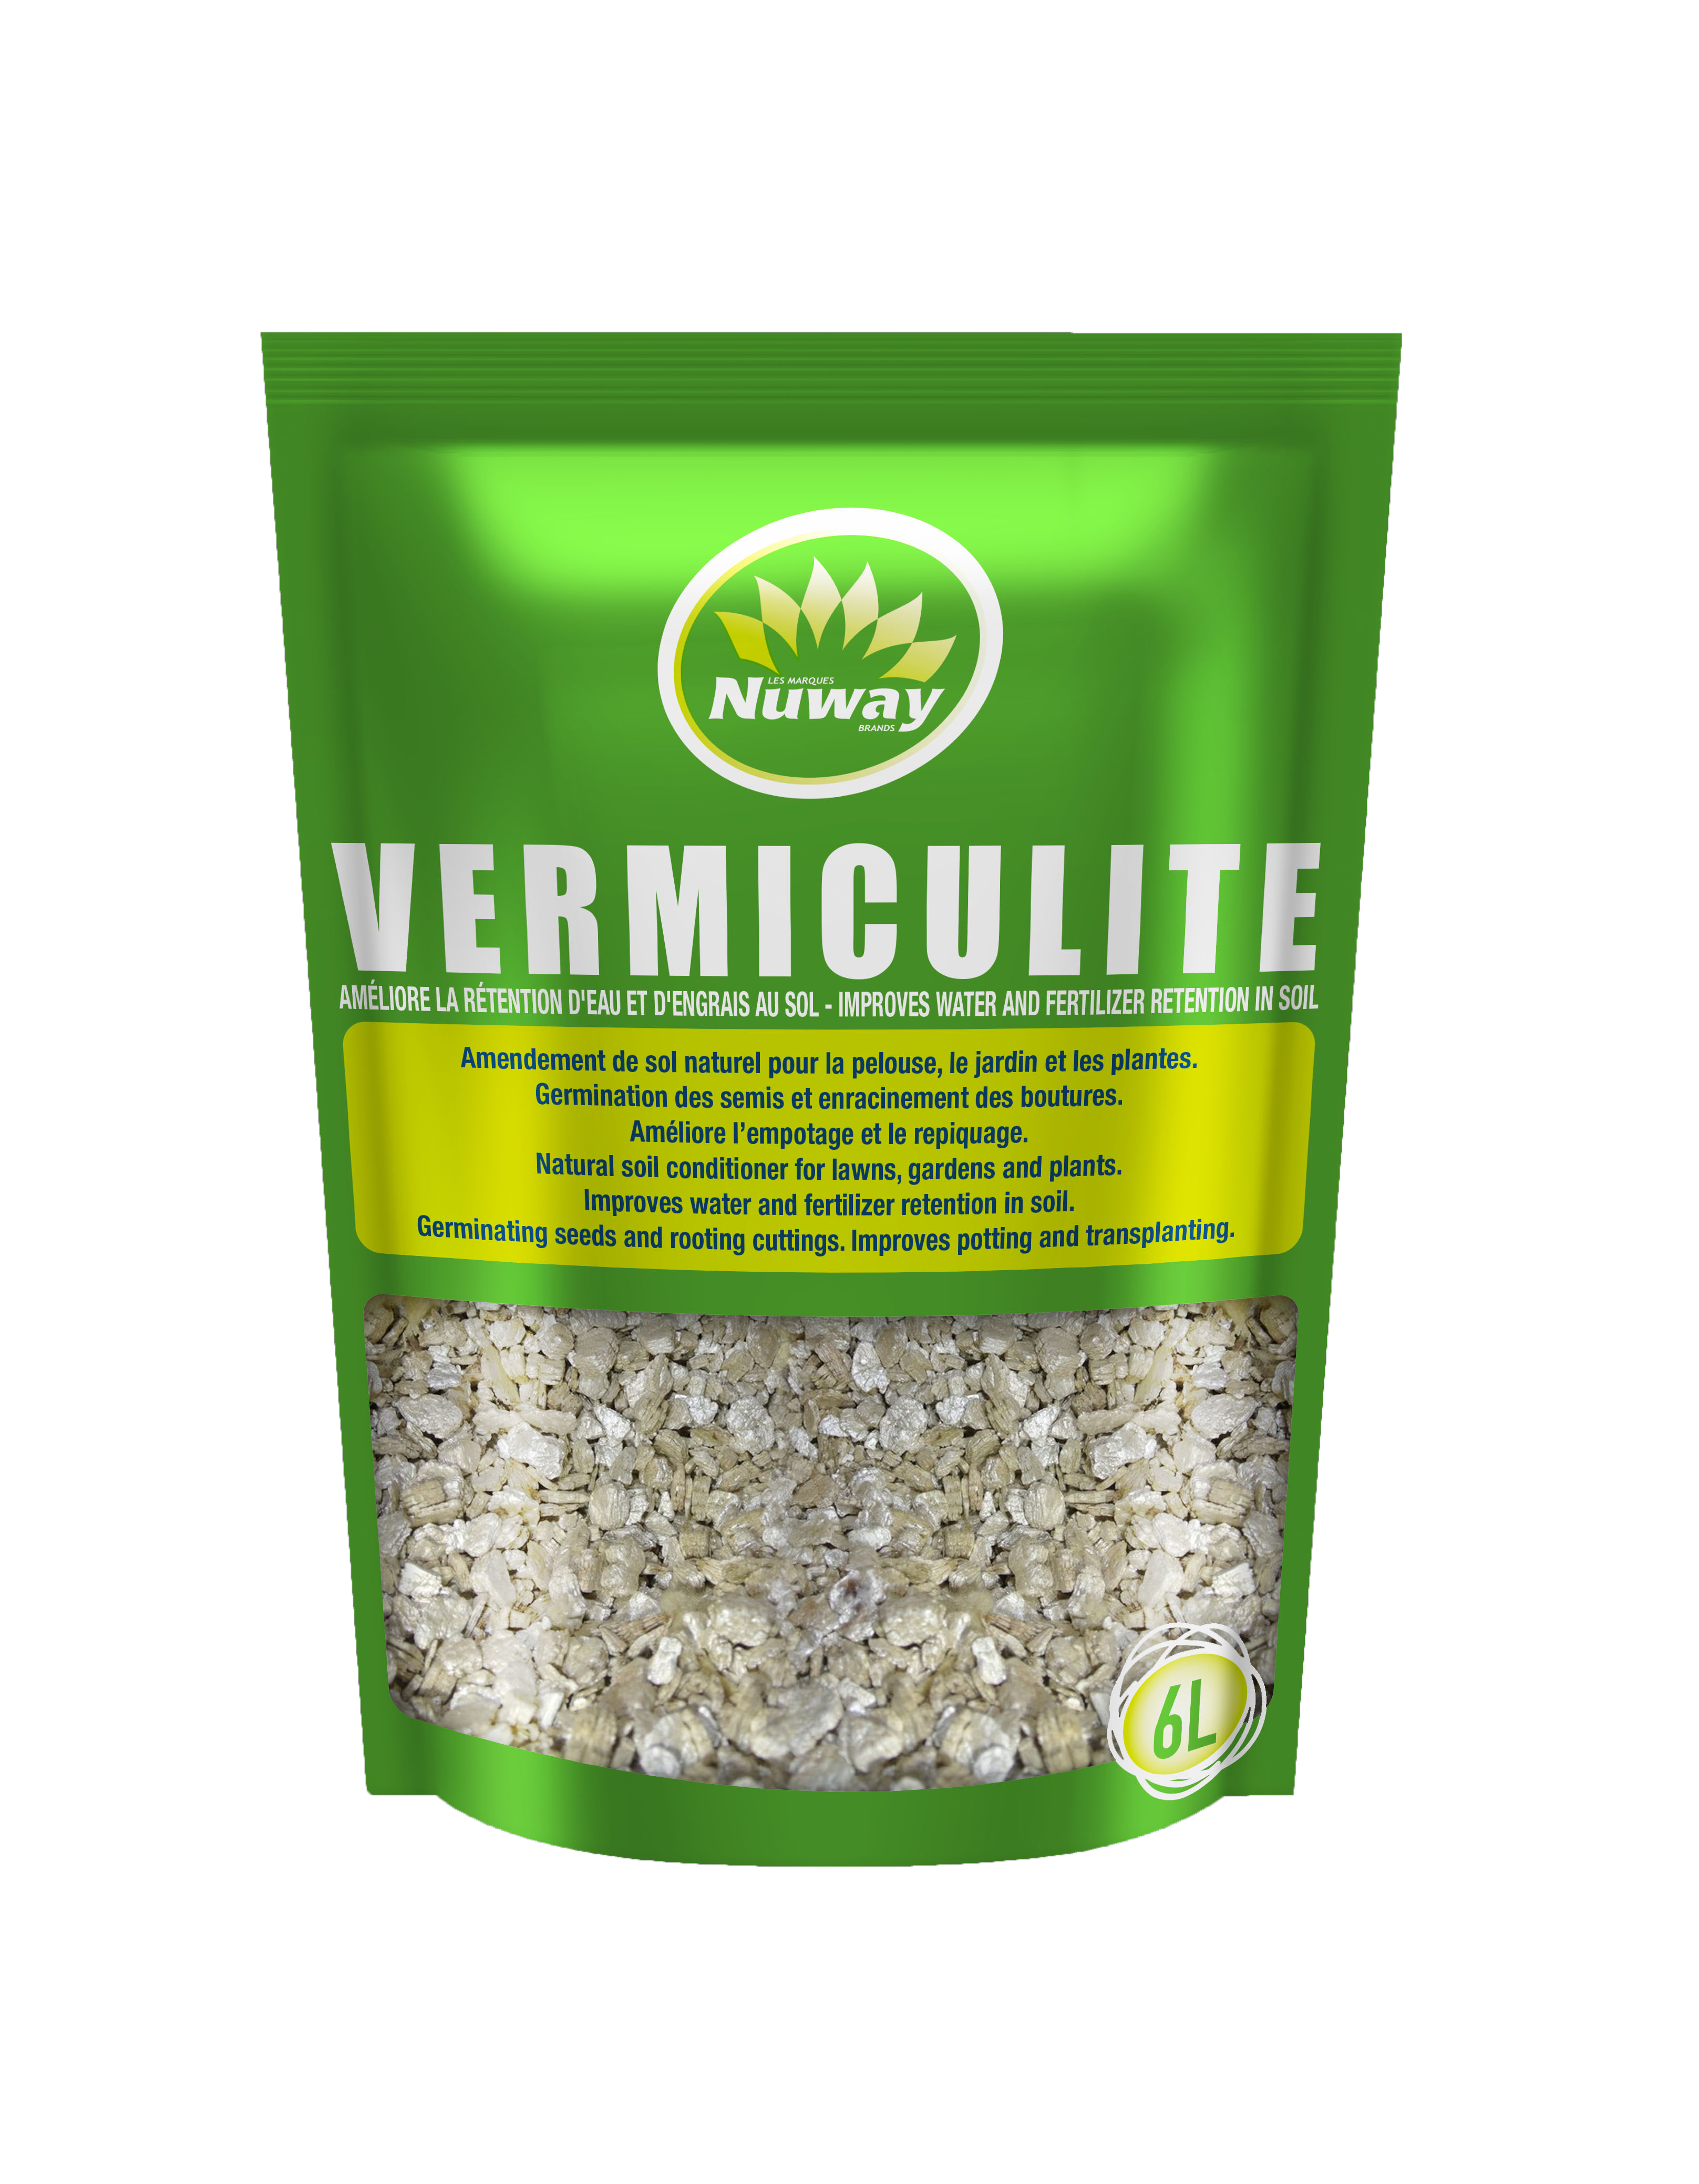 3D Vermiculite_Nuway_avant